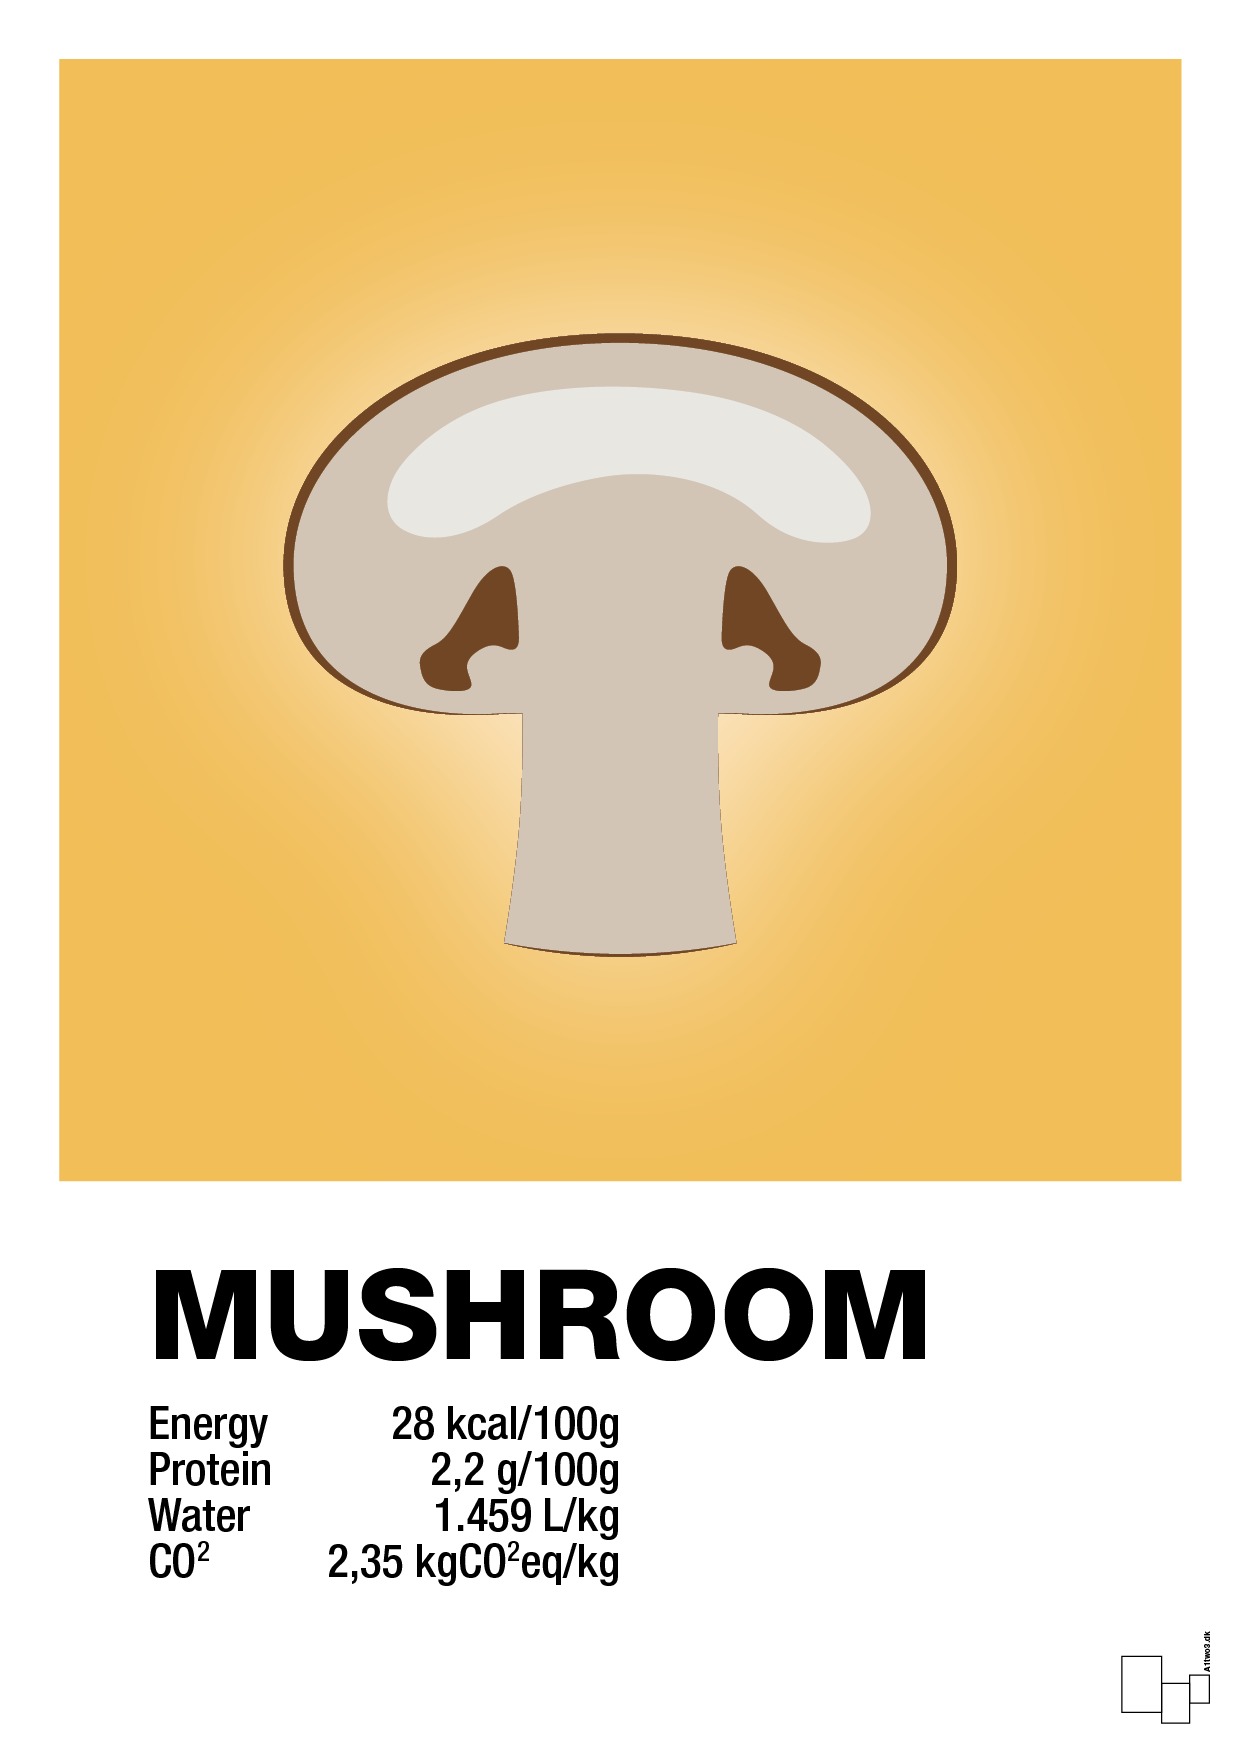 mushroom nutrition og miljø - Plakat med Mad & Drikke i Honeycomb